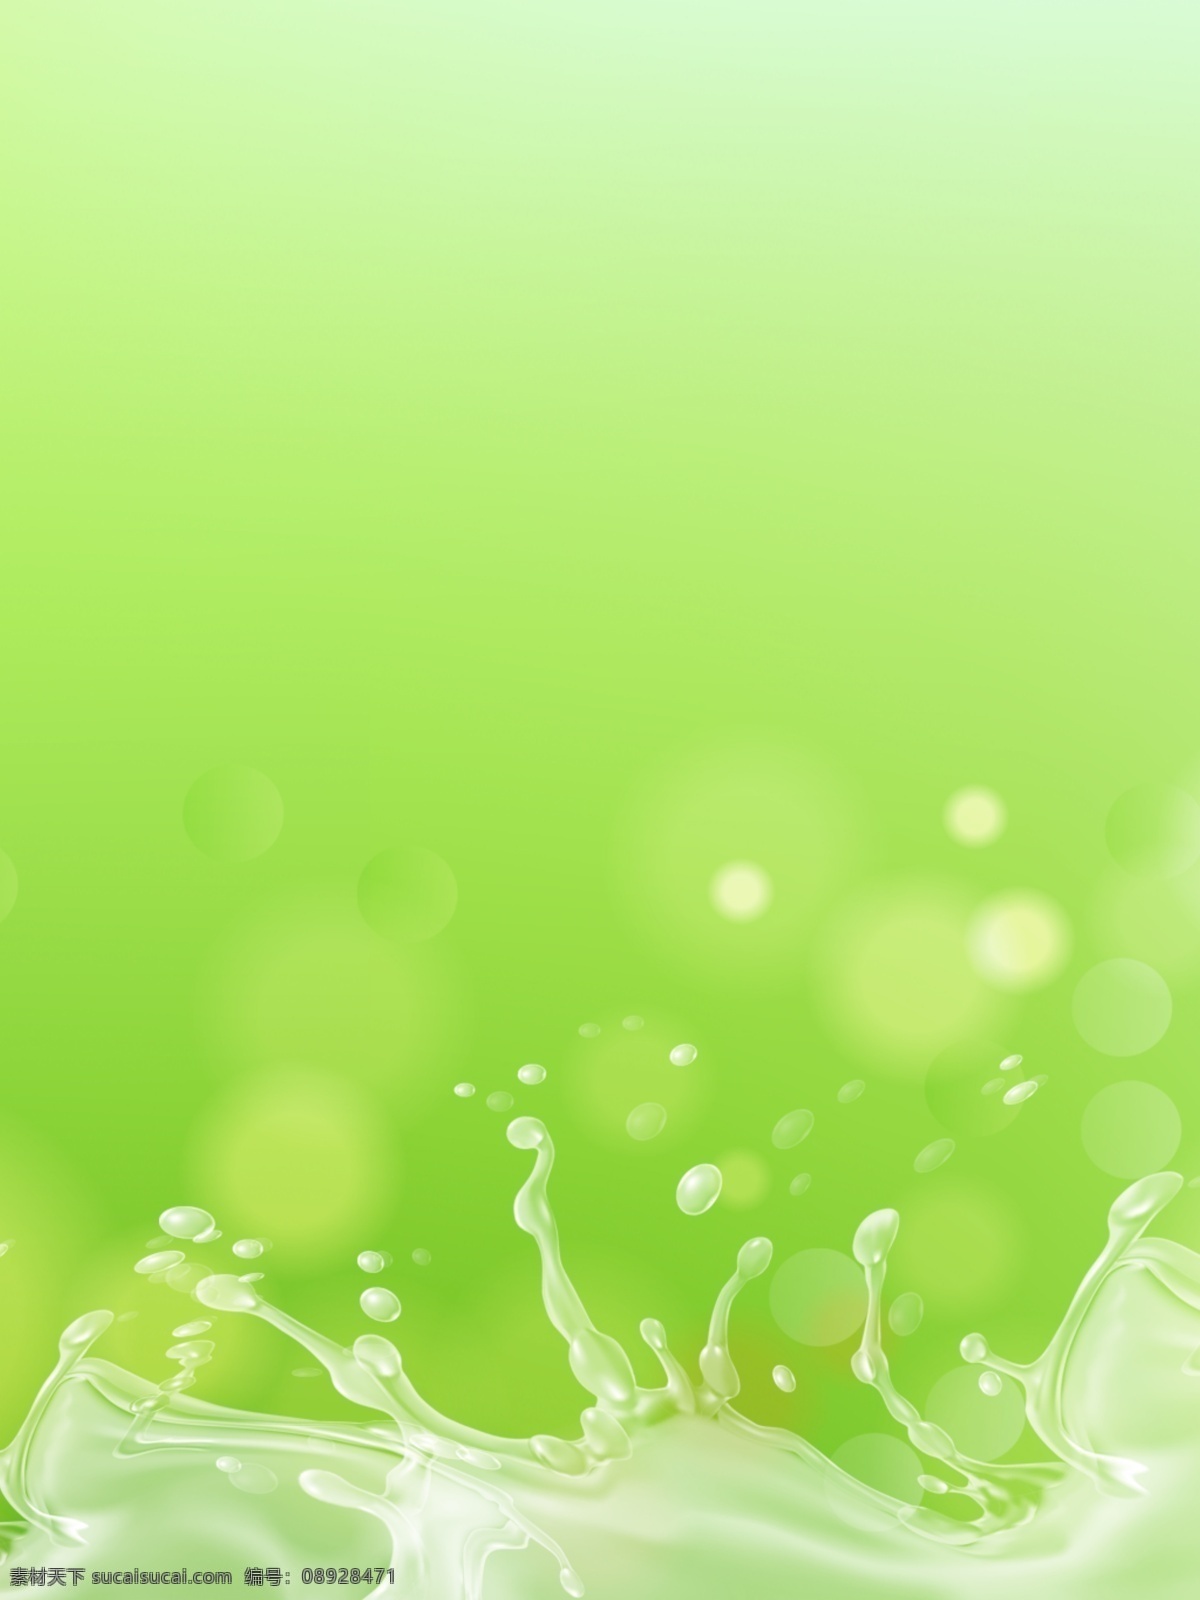 自然 清新 绿色 液态 喷溅 化妆品 背景 图 背景图